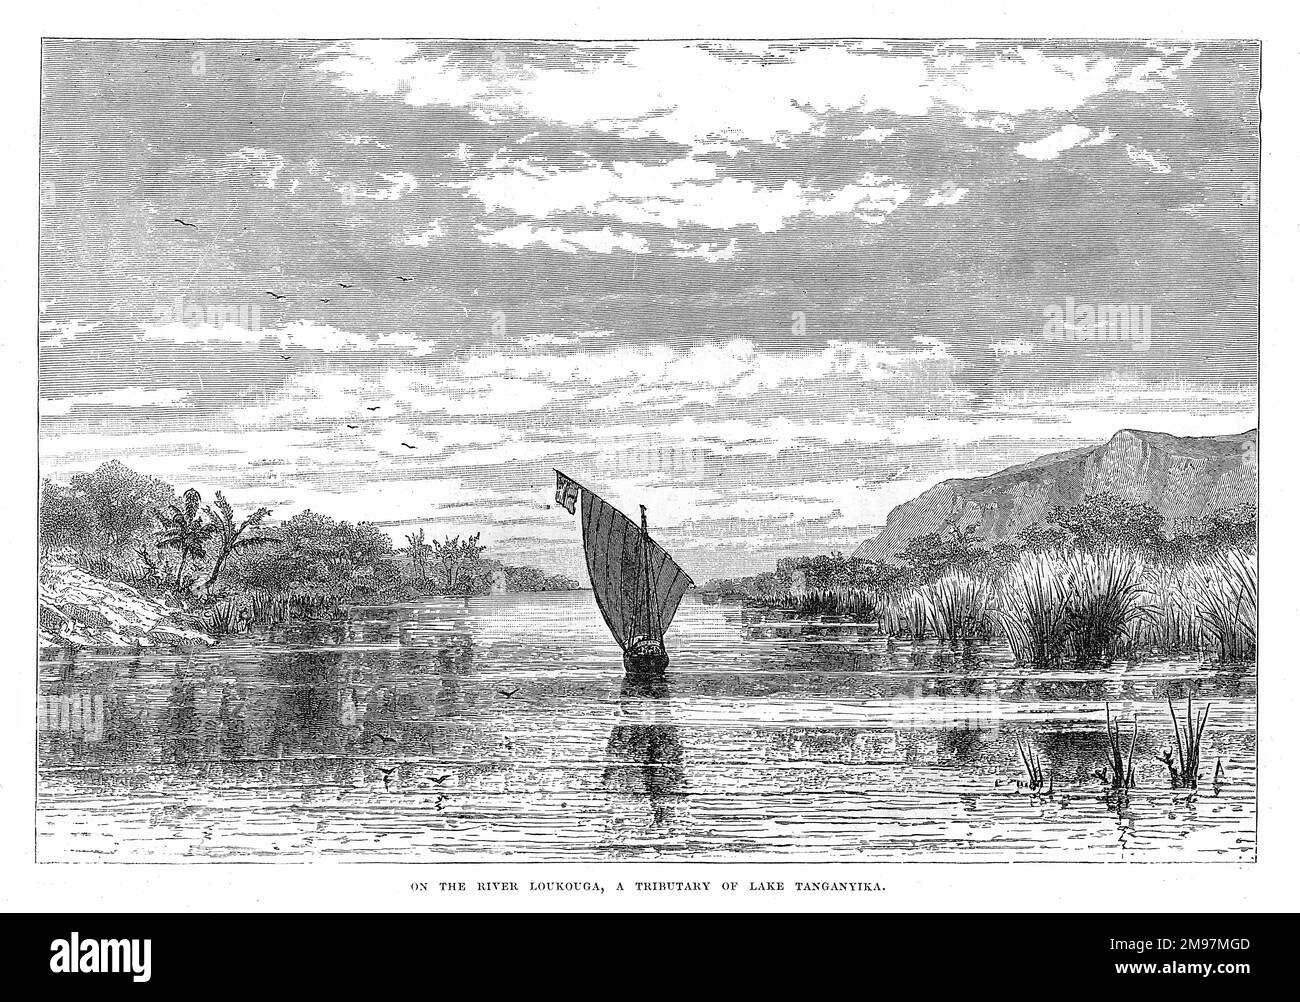 Vue sur un bateau à voile sur la Loukouga (Lukuga), un affluent du lac Tanganyika, en Afrique, au moment de l'expédition de John Hanning Speke pour découvrir les Grands Lacs d'Afrique de l'est. Banque D'Images